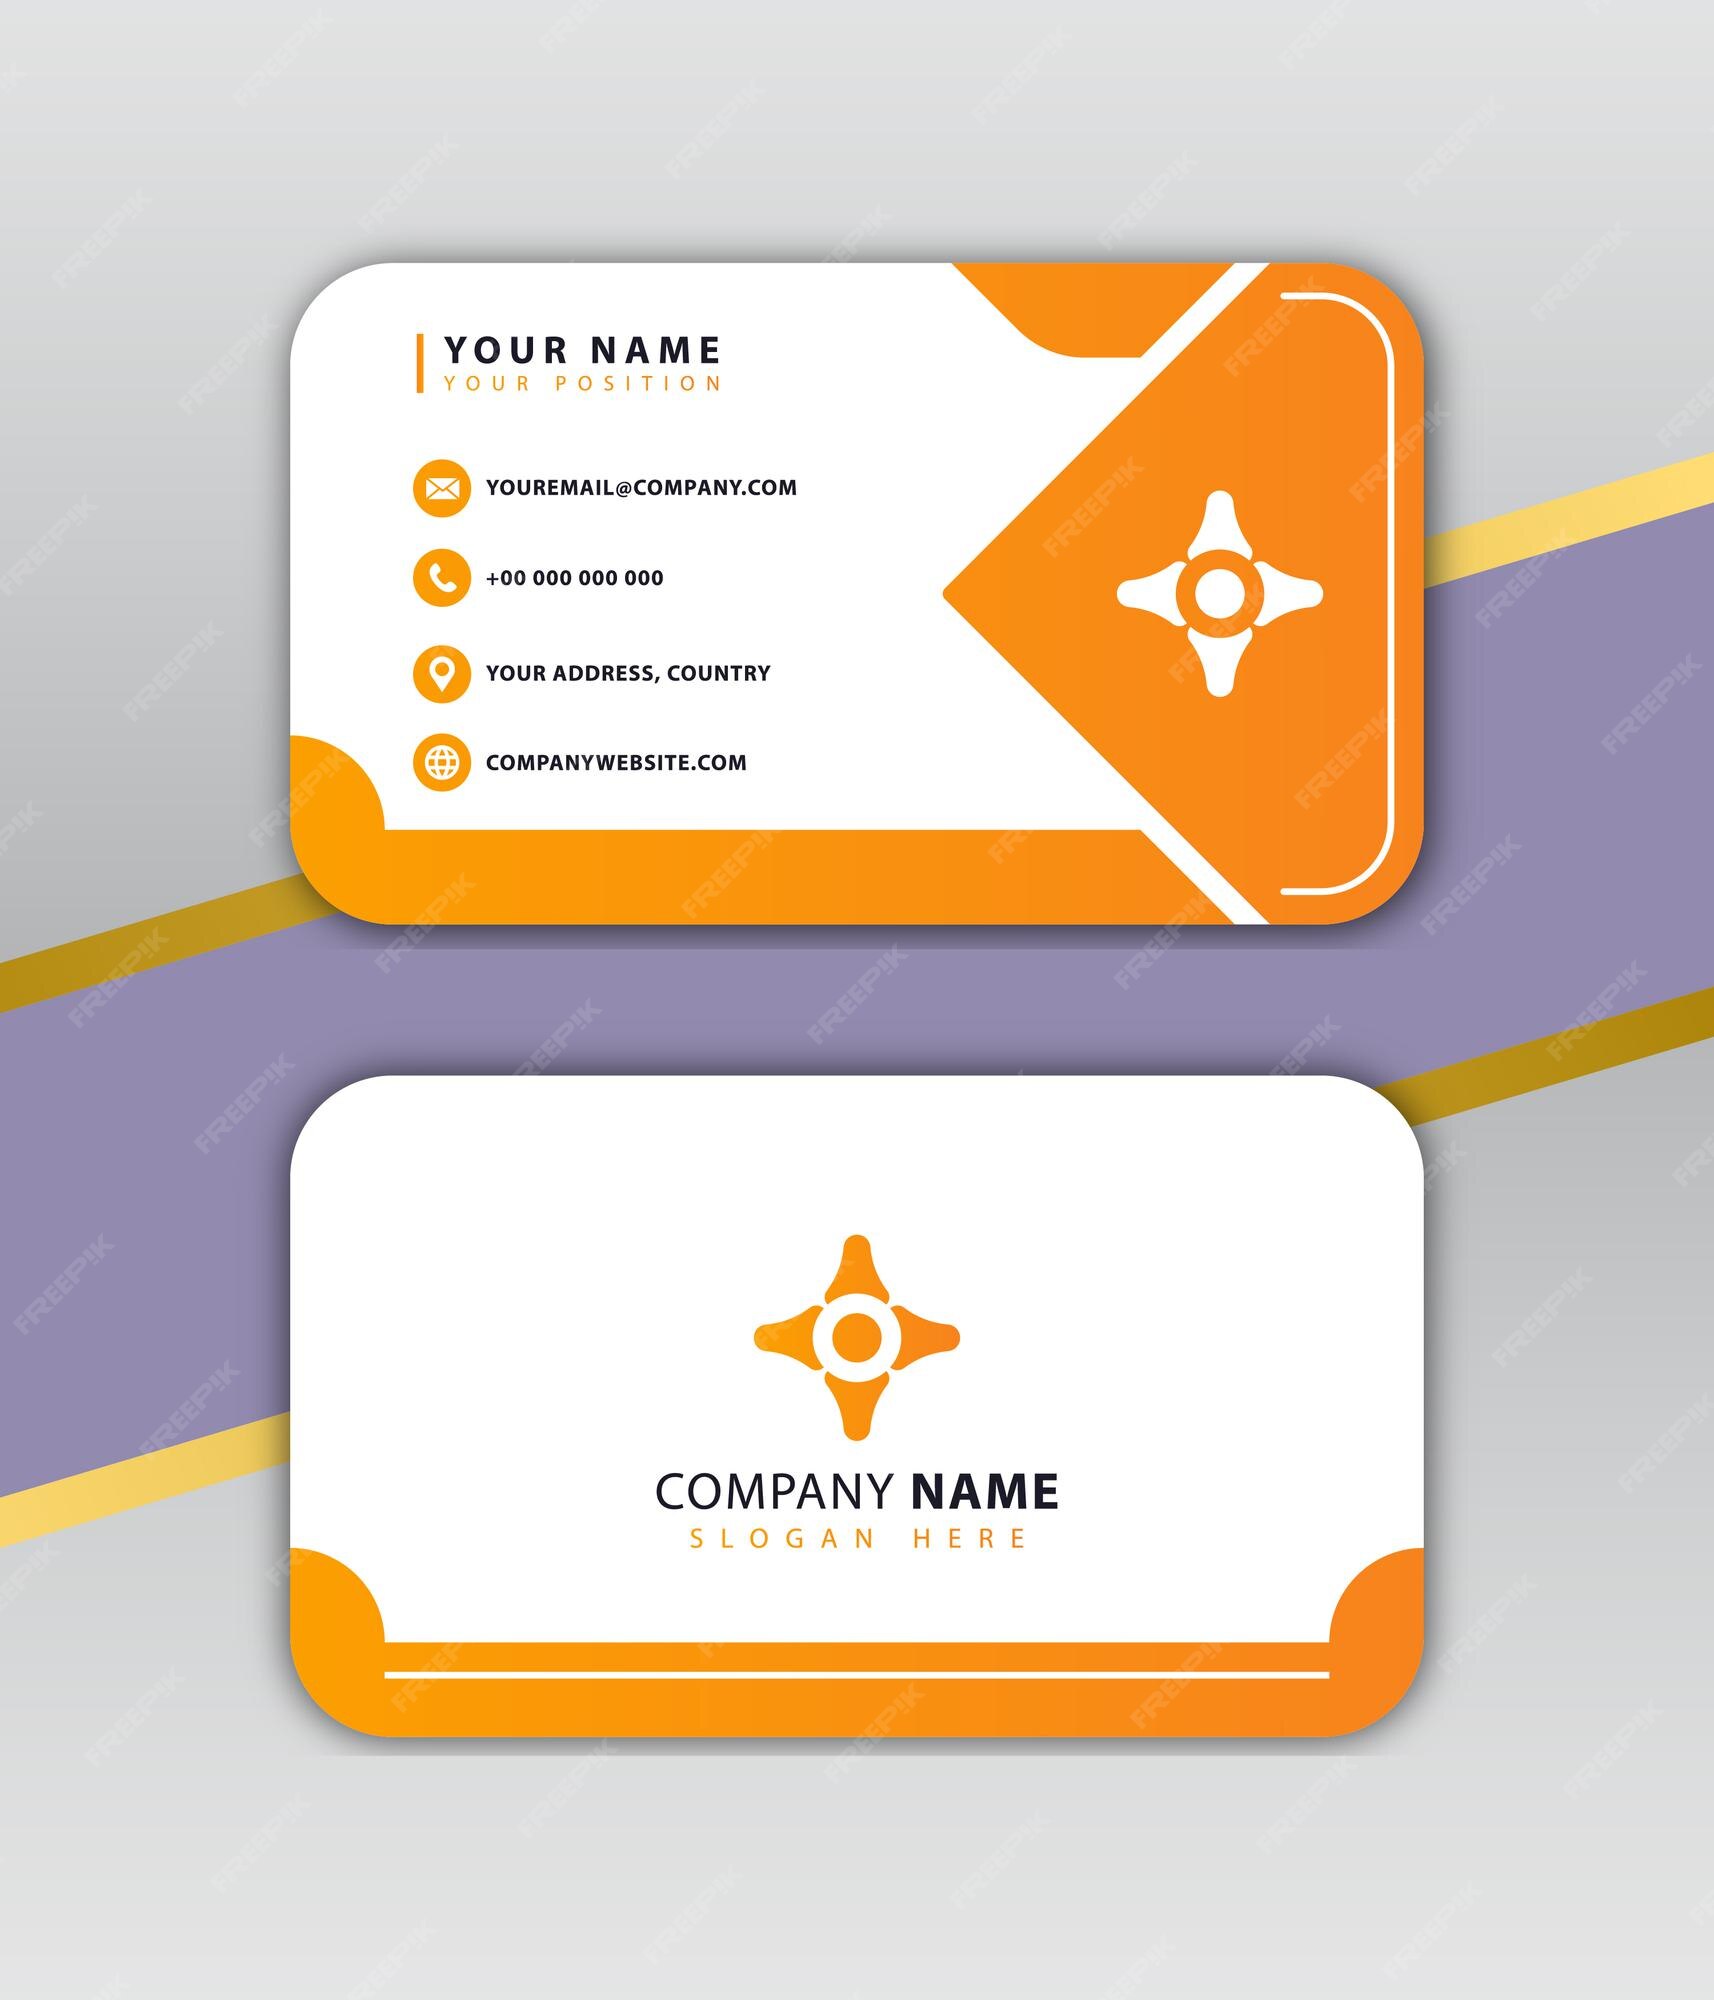 Với màu cam trắng tươi sáng, thiết kế card visit đơn giản sẽ giúp bạn nổi bật và ấn tượng trong mắt khách hàng. Đừng làm phức tạp nếu không cần thiết, chỉ cần sự tinh tế và chuyên nghiệp. Hãy xem ngay hình ảnh liên quan để cùng tìm hiểu về thiết kế này nhé!